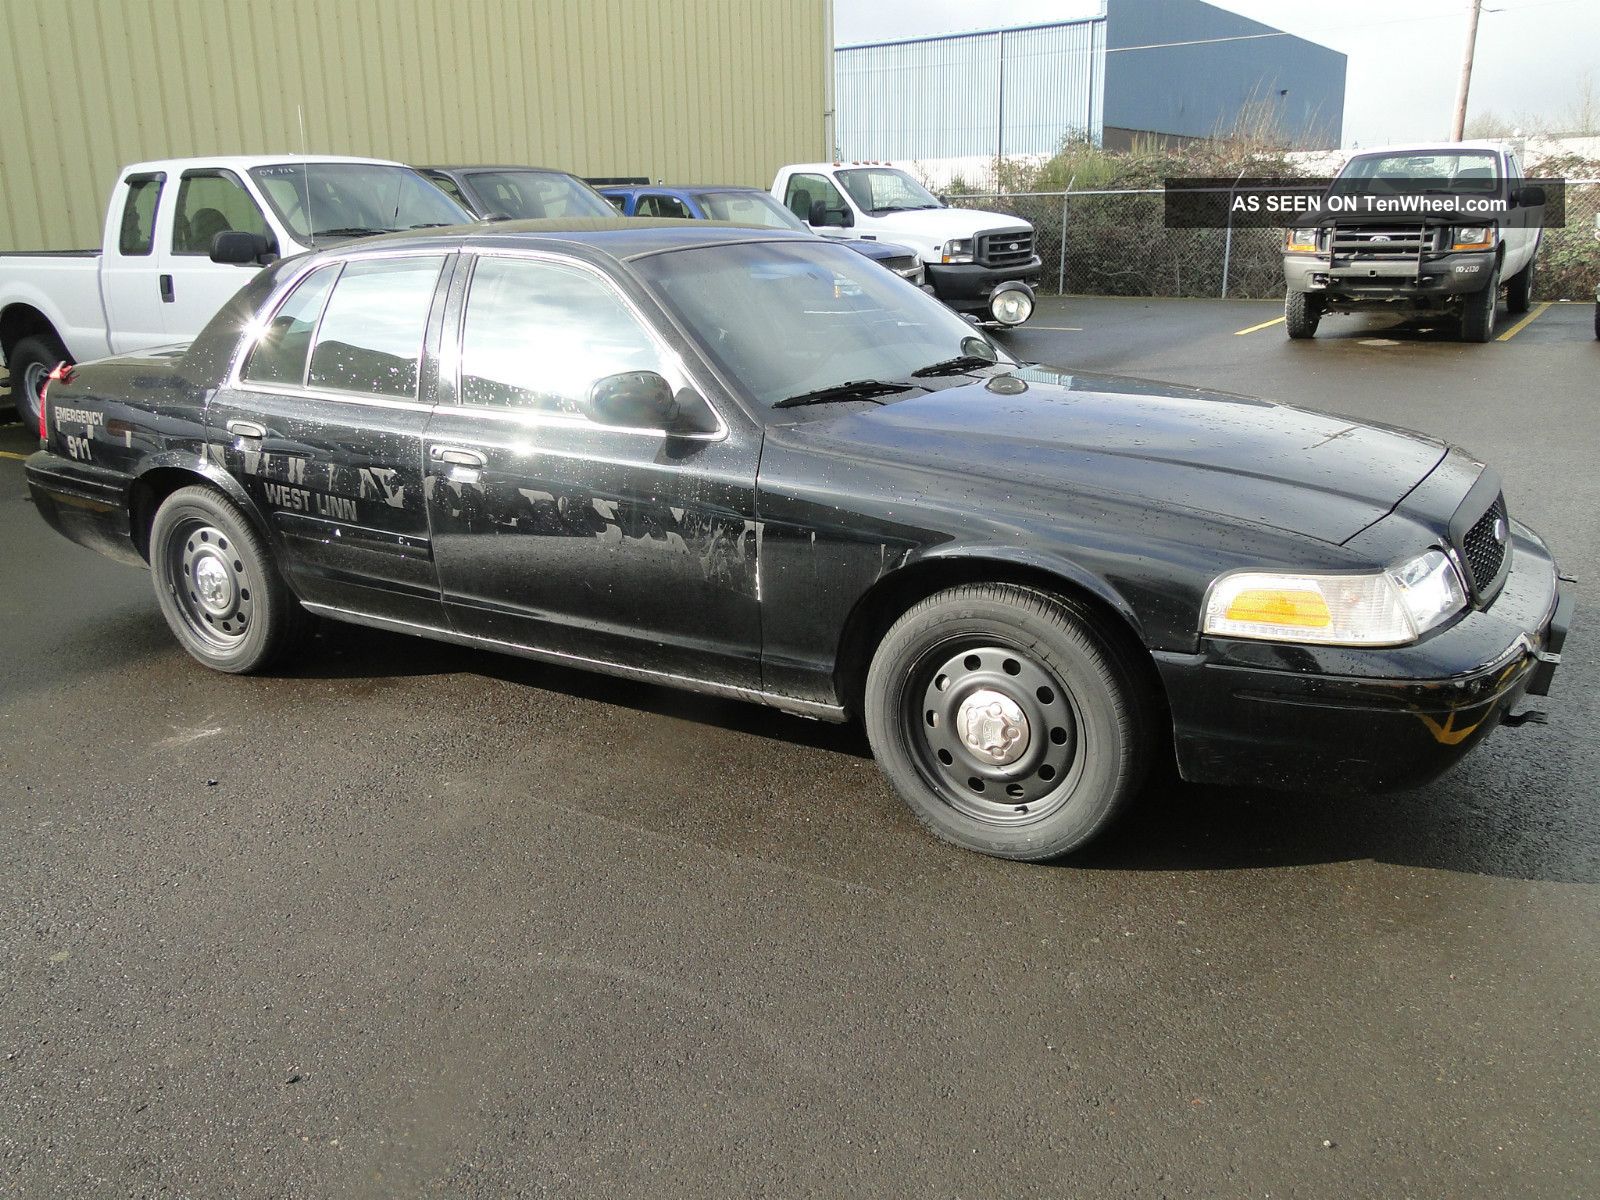 2007 Ford police interceptor horsepower #4